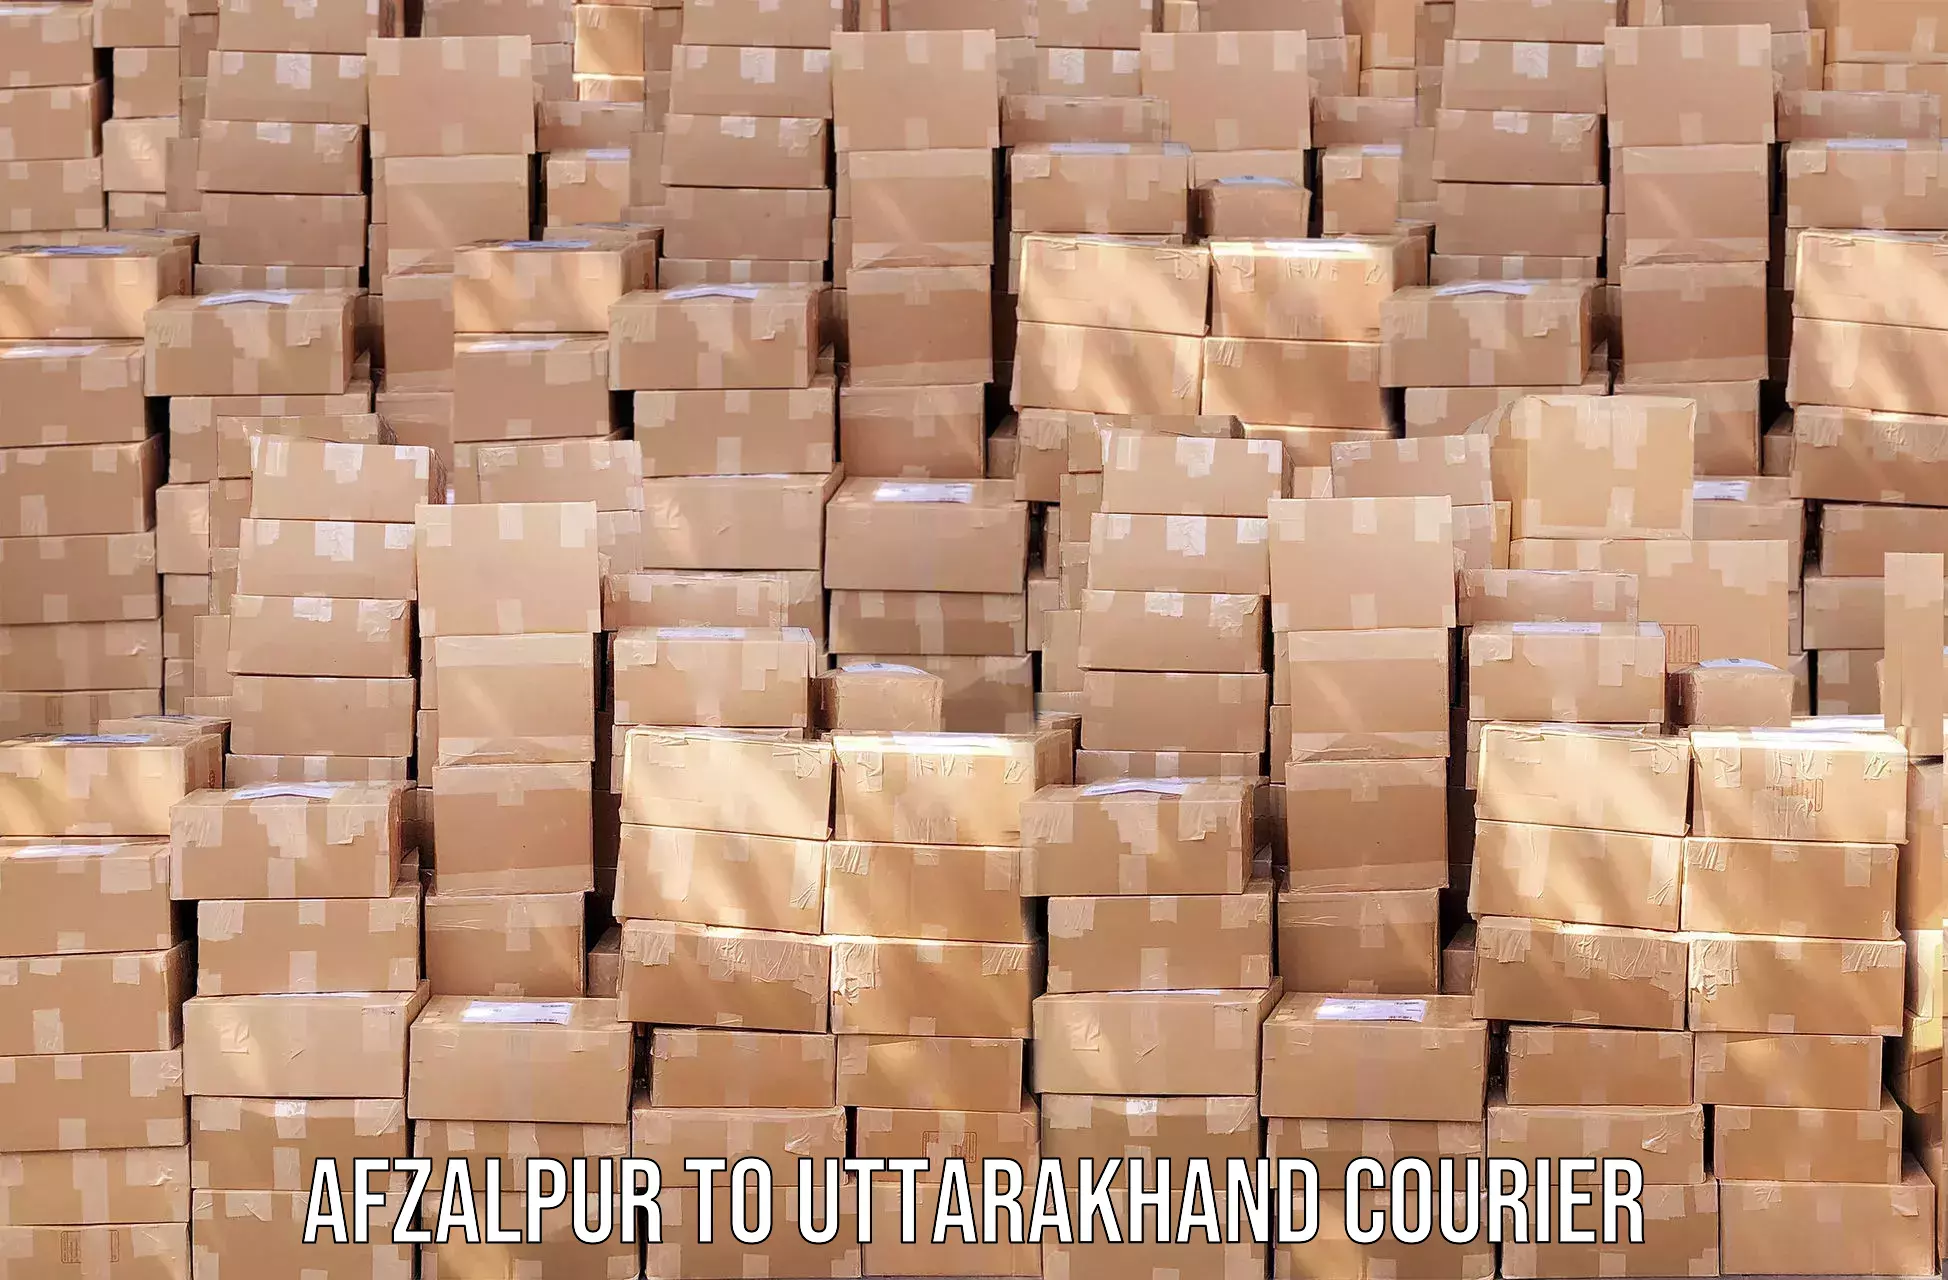 Efficient parcel transport Afzalpur to Lansdowne